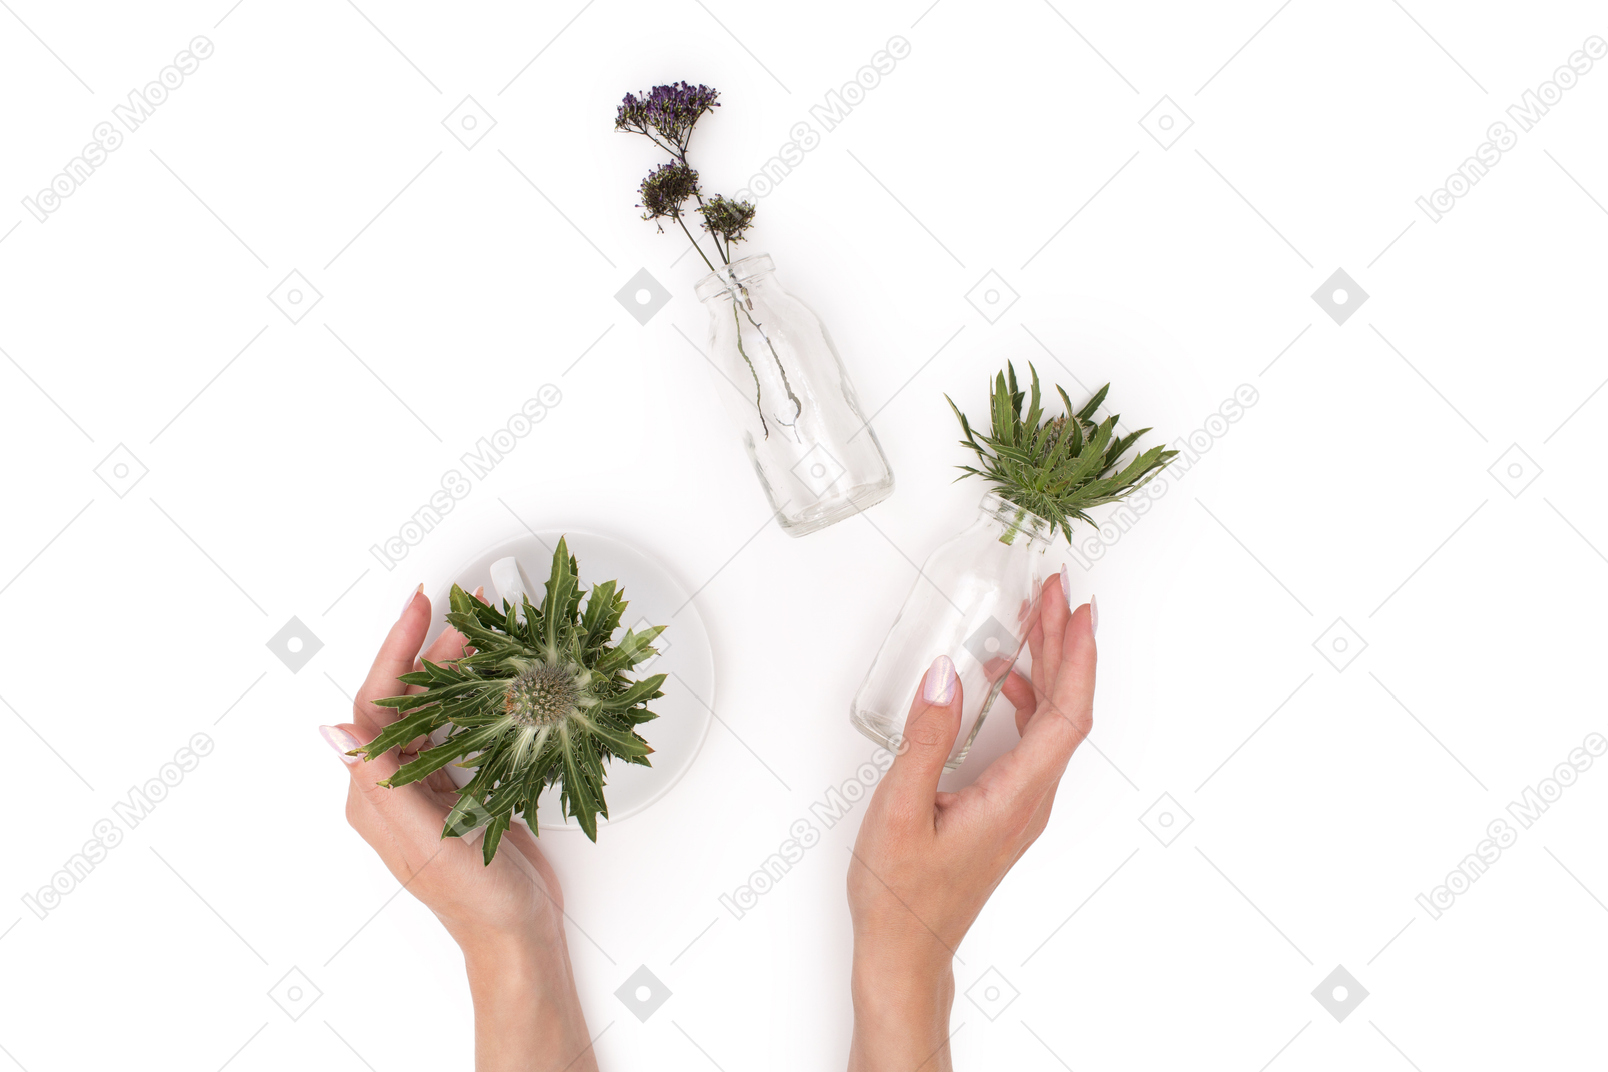 Seja gentil com as plantas em vaso